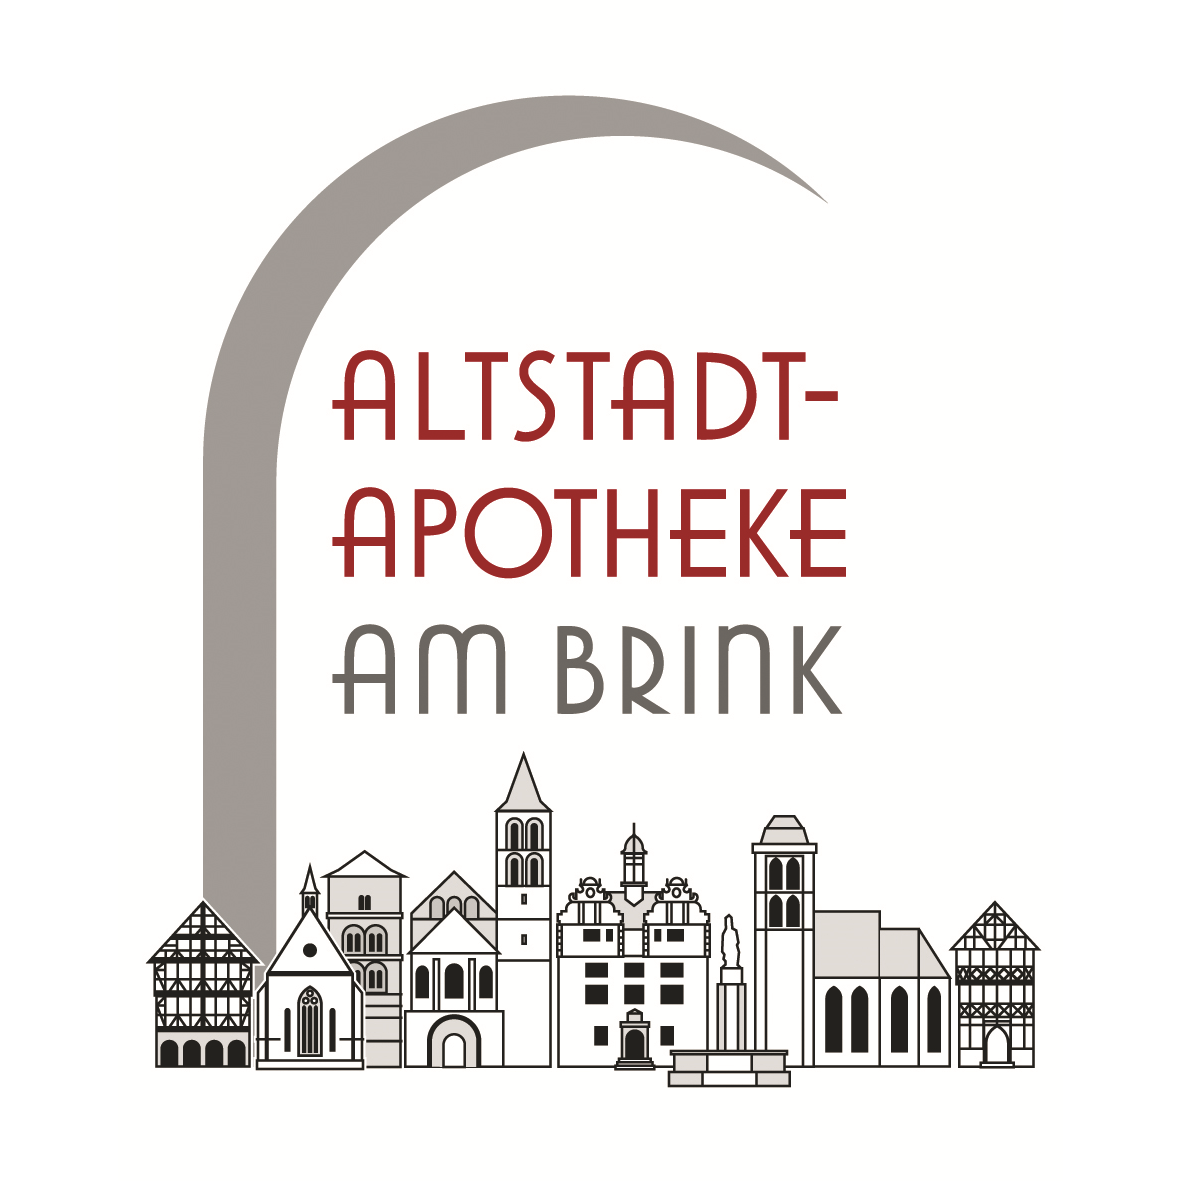 Altstadt-Apotheke Am Brink in Bad Hersfeld - Logo